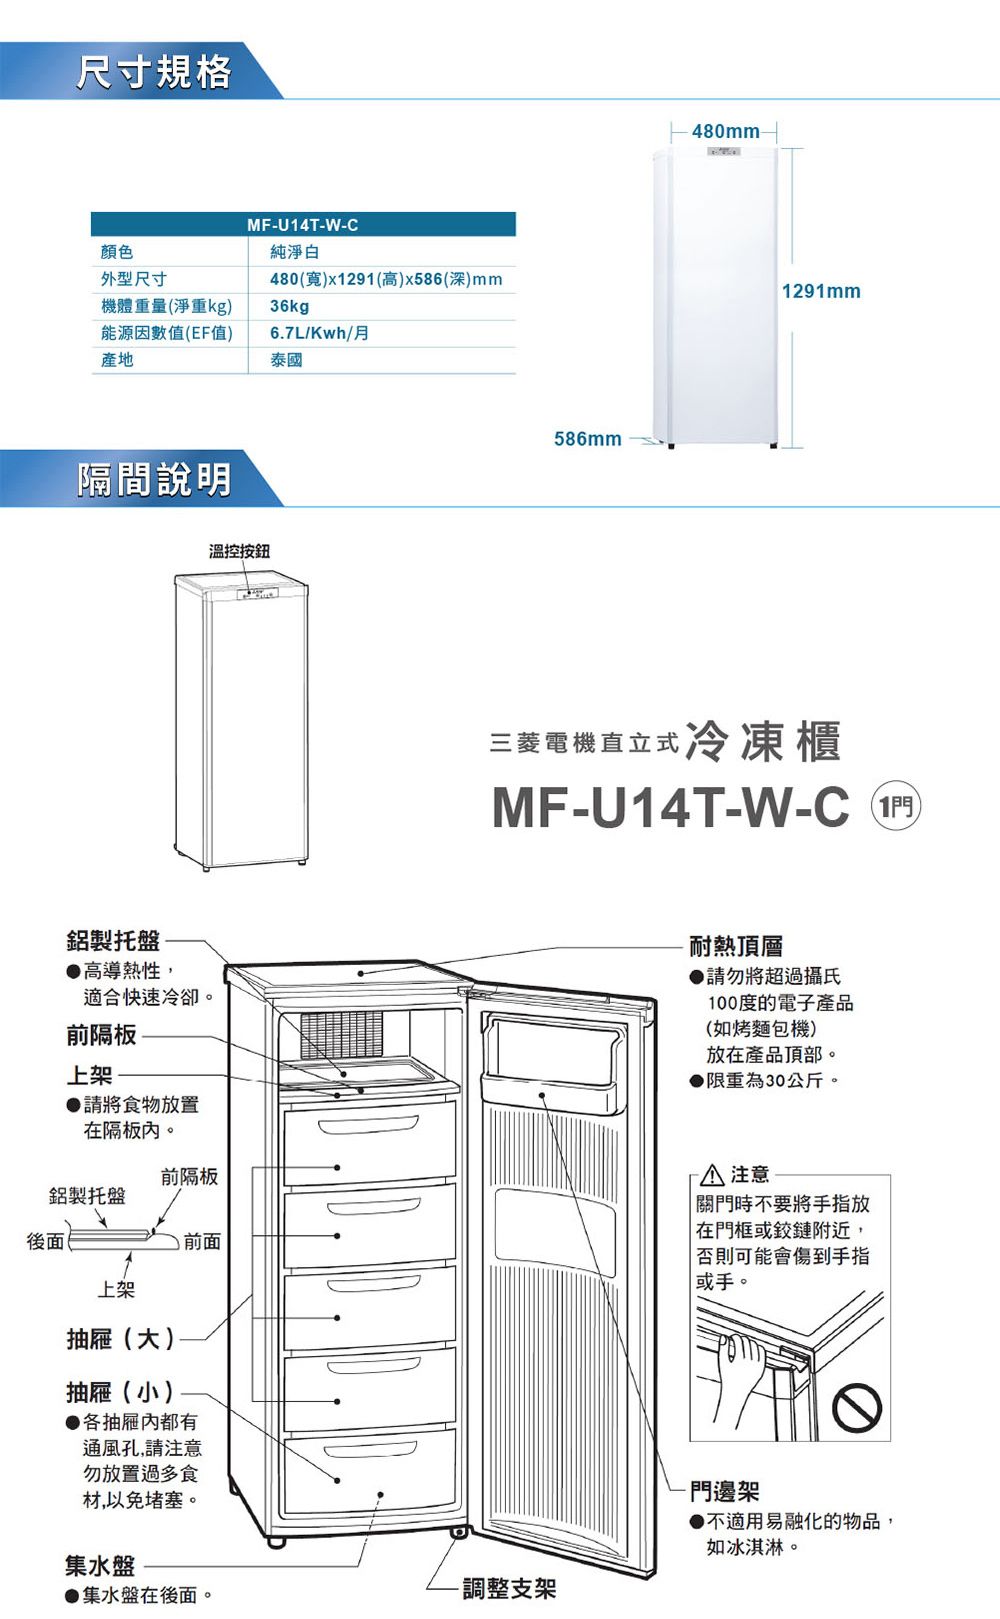 尺寸規格顏色外型尺寸機體重量(淨重kg)能源因數值(EF值)產地隔間說明MFU14TW-C純淨白480()x1291(高)x586(深)mm36kg6.7L/Kwh/月溫控按鈕泰國586mm480mm-1291mm三菱電機直立式冷凍櫃MF-U14T-W-C 鋁製托盤●高導熱性,適合快速冷卻。前隔板上架●請將食物放置在隔板。耐熱頂層●請勿將超過攝氏100度的電子產品(如烤麵包機)放在產品頂部。▶限重為30公斤。前隔板鋁製托盤後面上架抽屜(大)抽屜(小)前面●各抽屜都有通風孔,請注意勿放置過多食材,以免堵塞。集水盤- 注意關門時不要將手指放在門框或鉸鏈附近,否則可能會傷到手指或手。-門邊架●不適用易融化的物品,如冰淇淋。●集水盤在後面。-調整支架